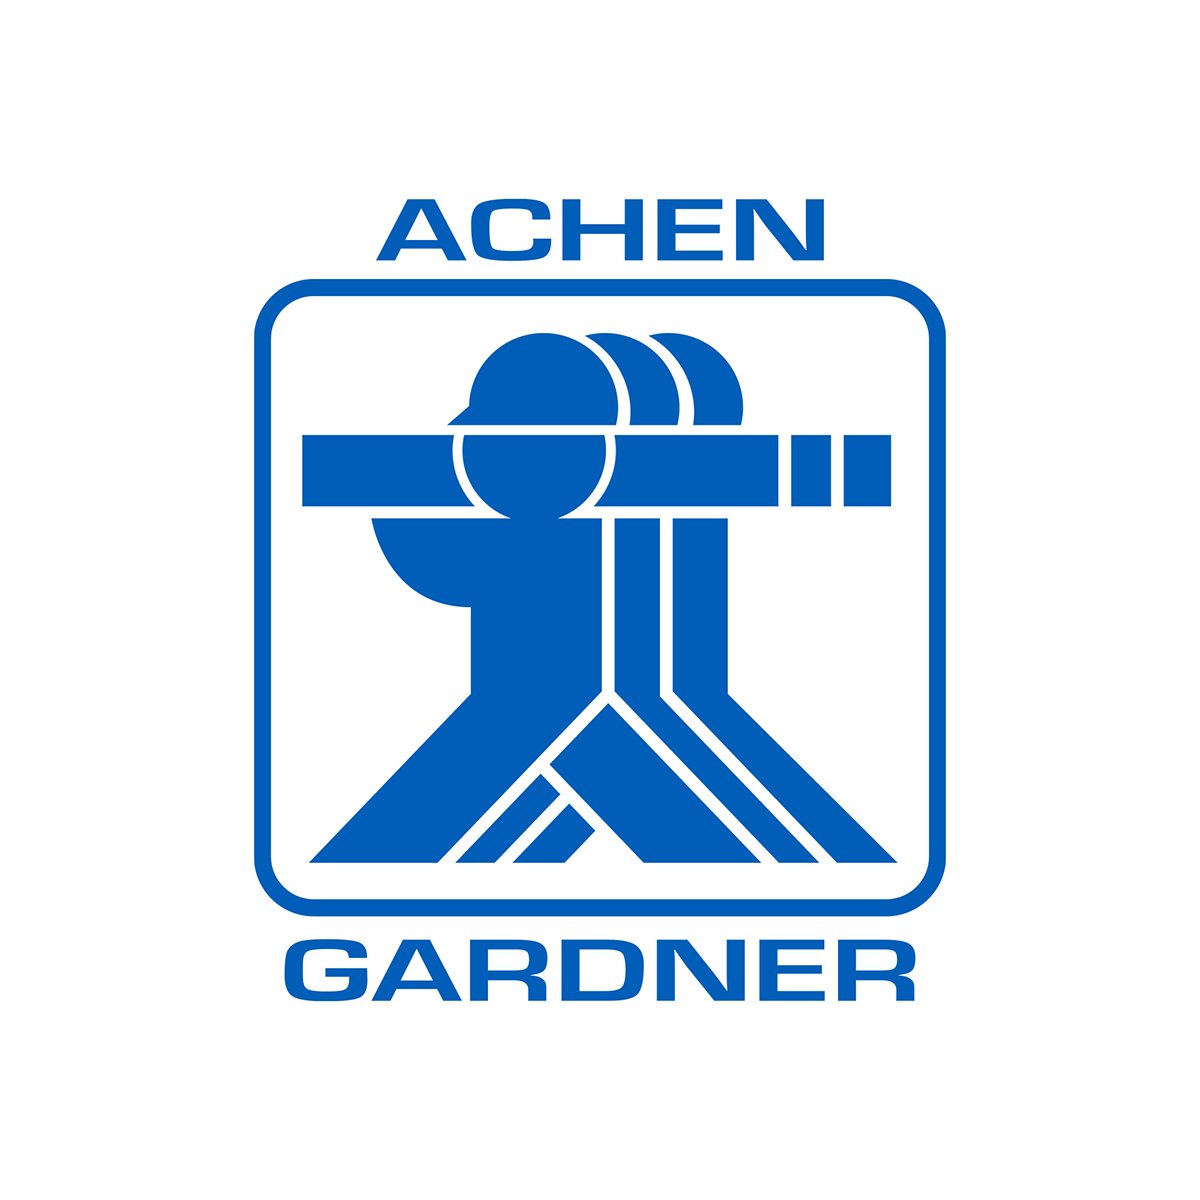 Achen-Gardner logo.jpg